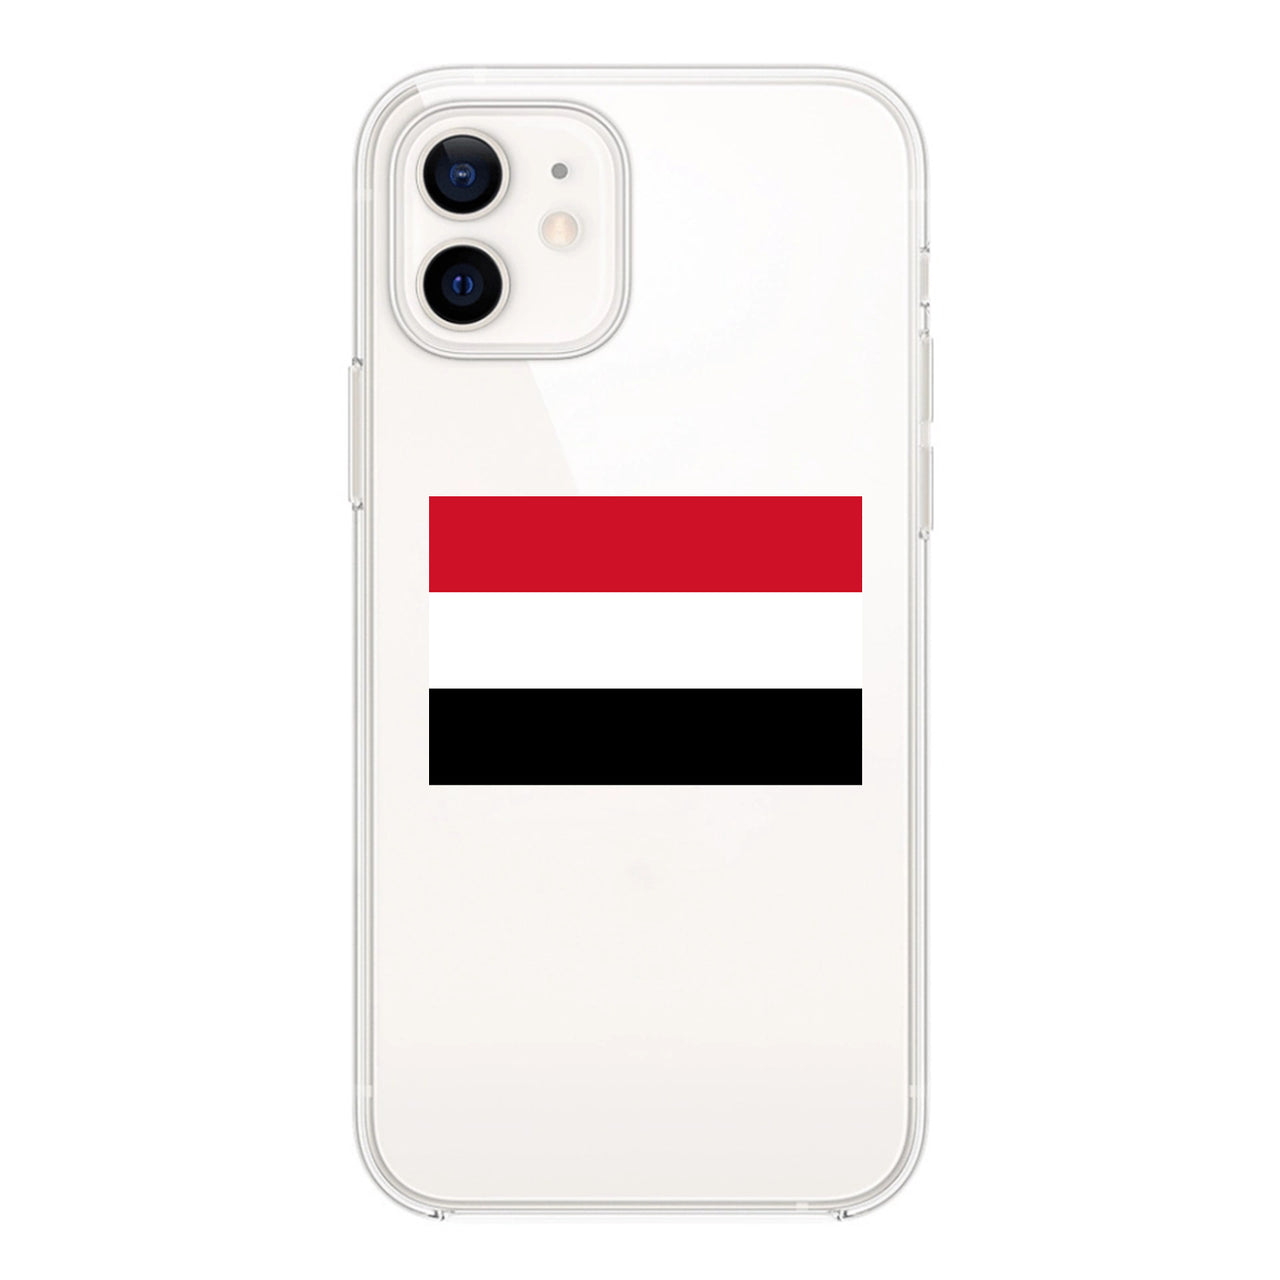 Yemen Designed Transparent Silicone iPhone Cases